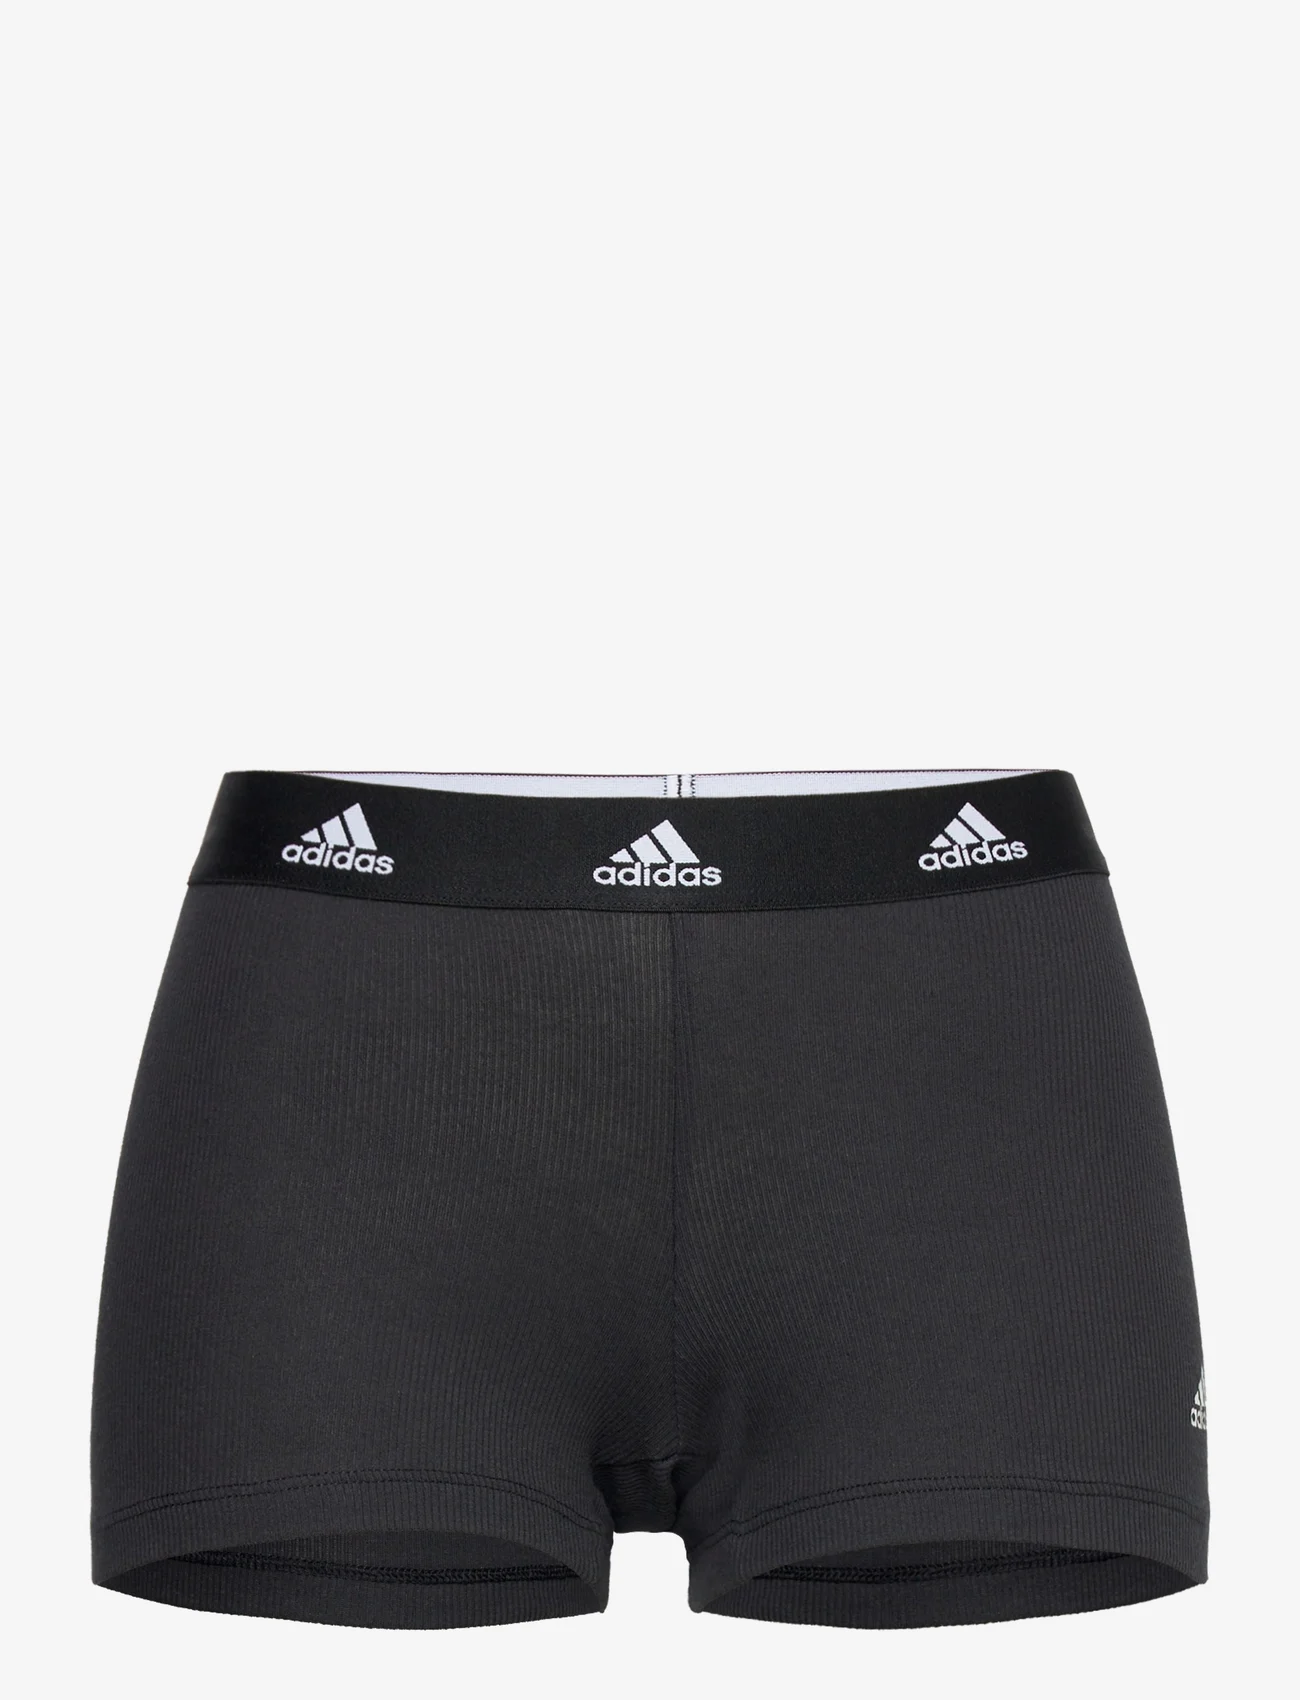 adidas Underwear - Short - laveste priser - black - 0